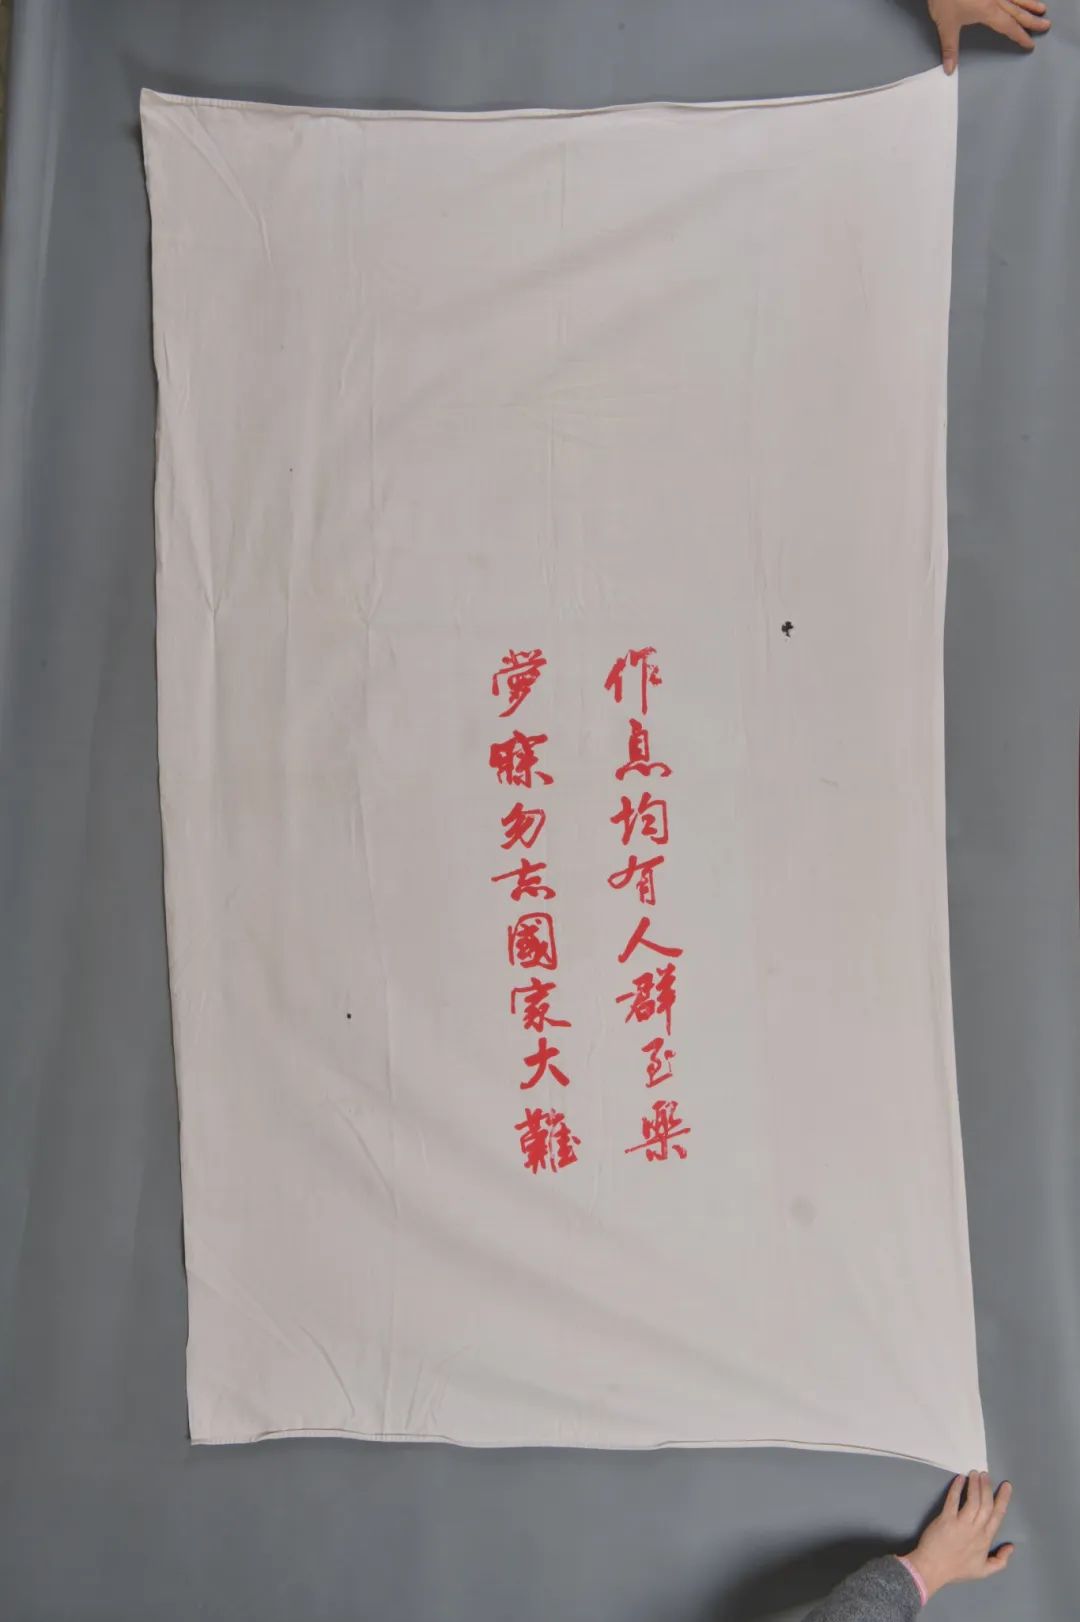 印有卢作孚题词的民生公司床单（一级文物） 中国民主党派历史陈列馆供图